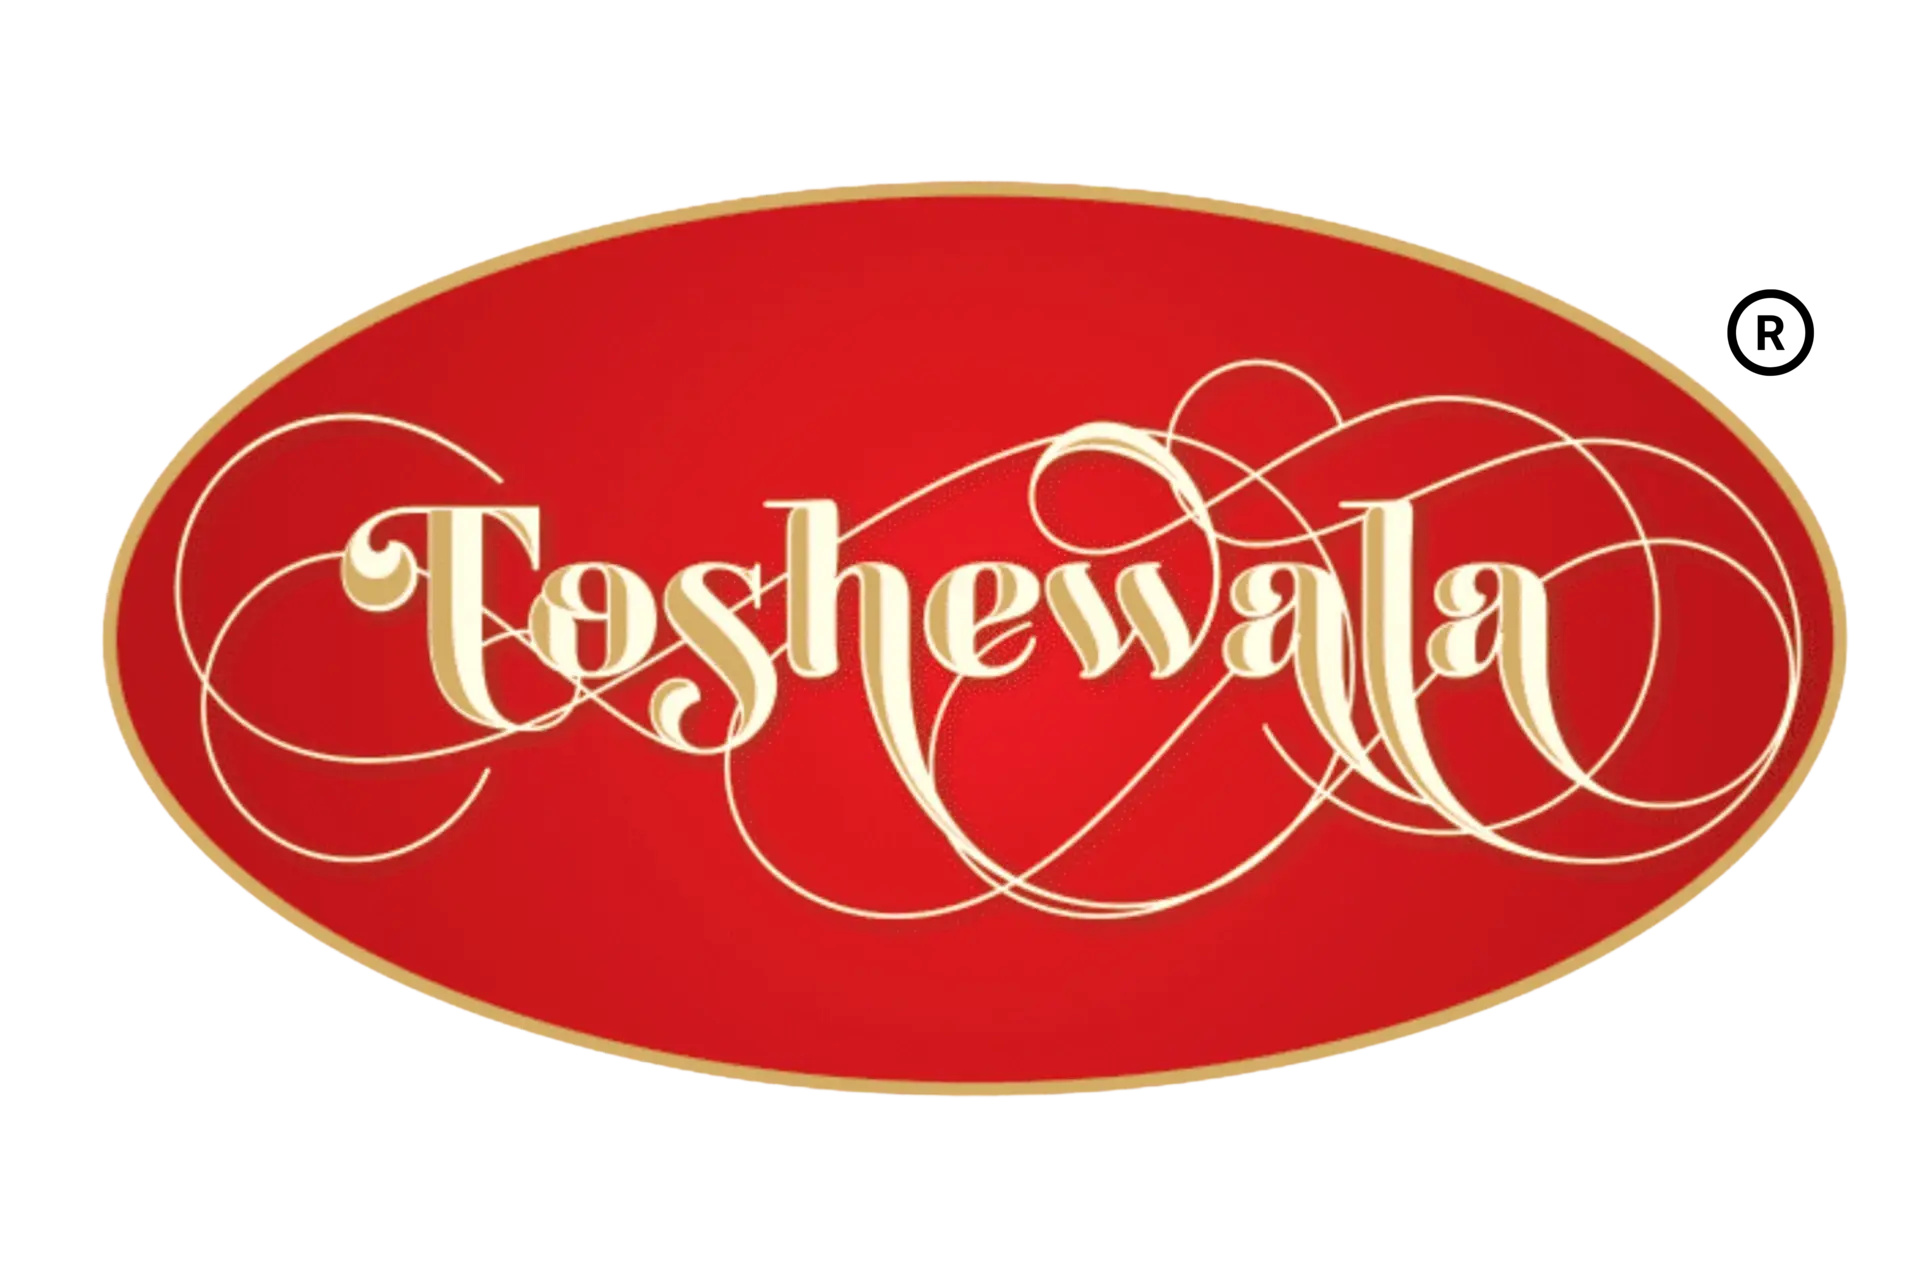 Toshewala